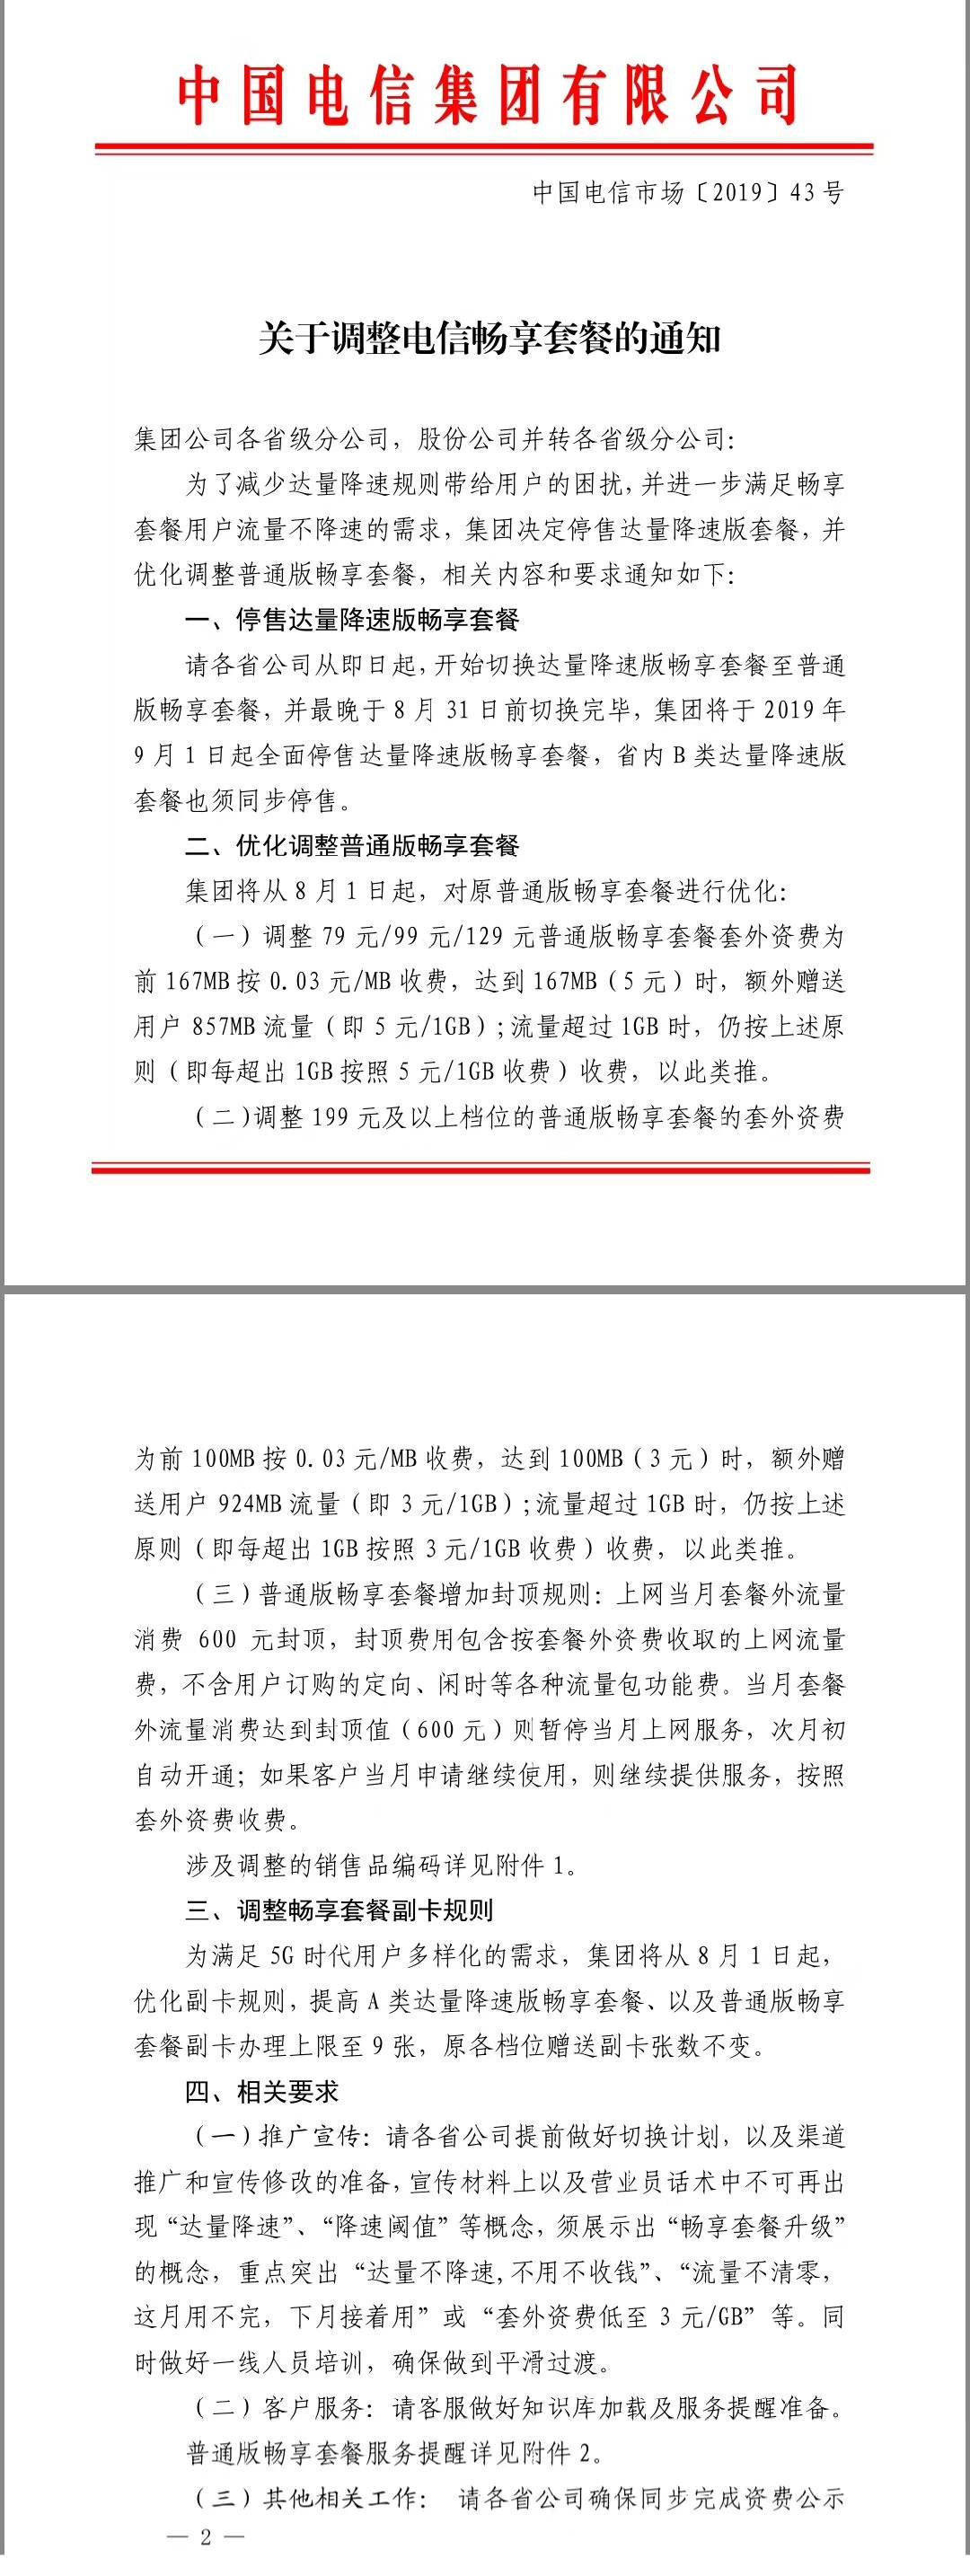 中国电信将取消不限量套餐，流量到达40GB就降速至1Mbps曾惹争议